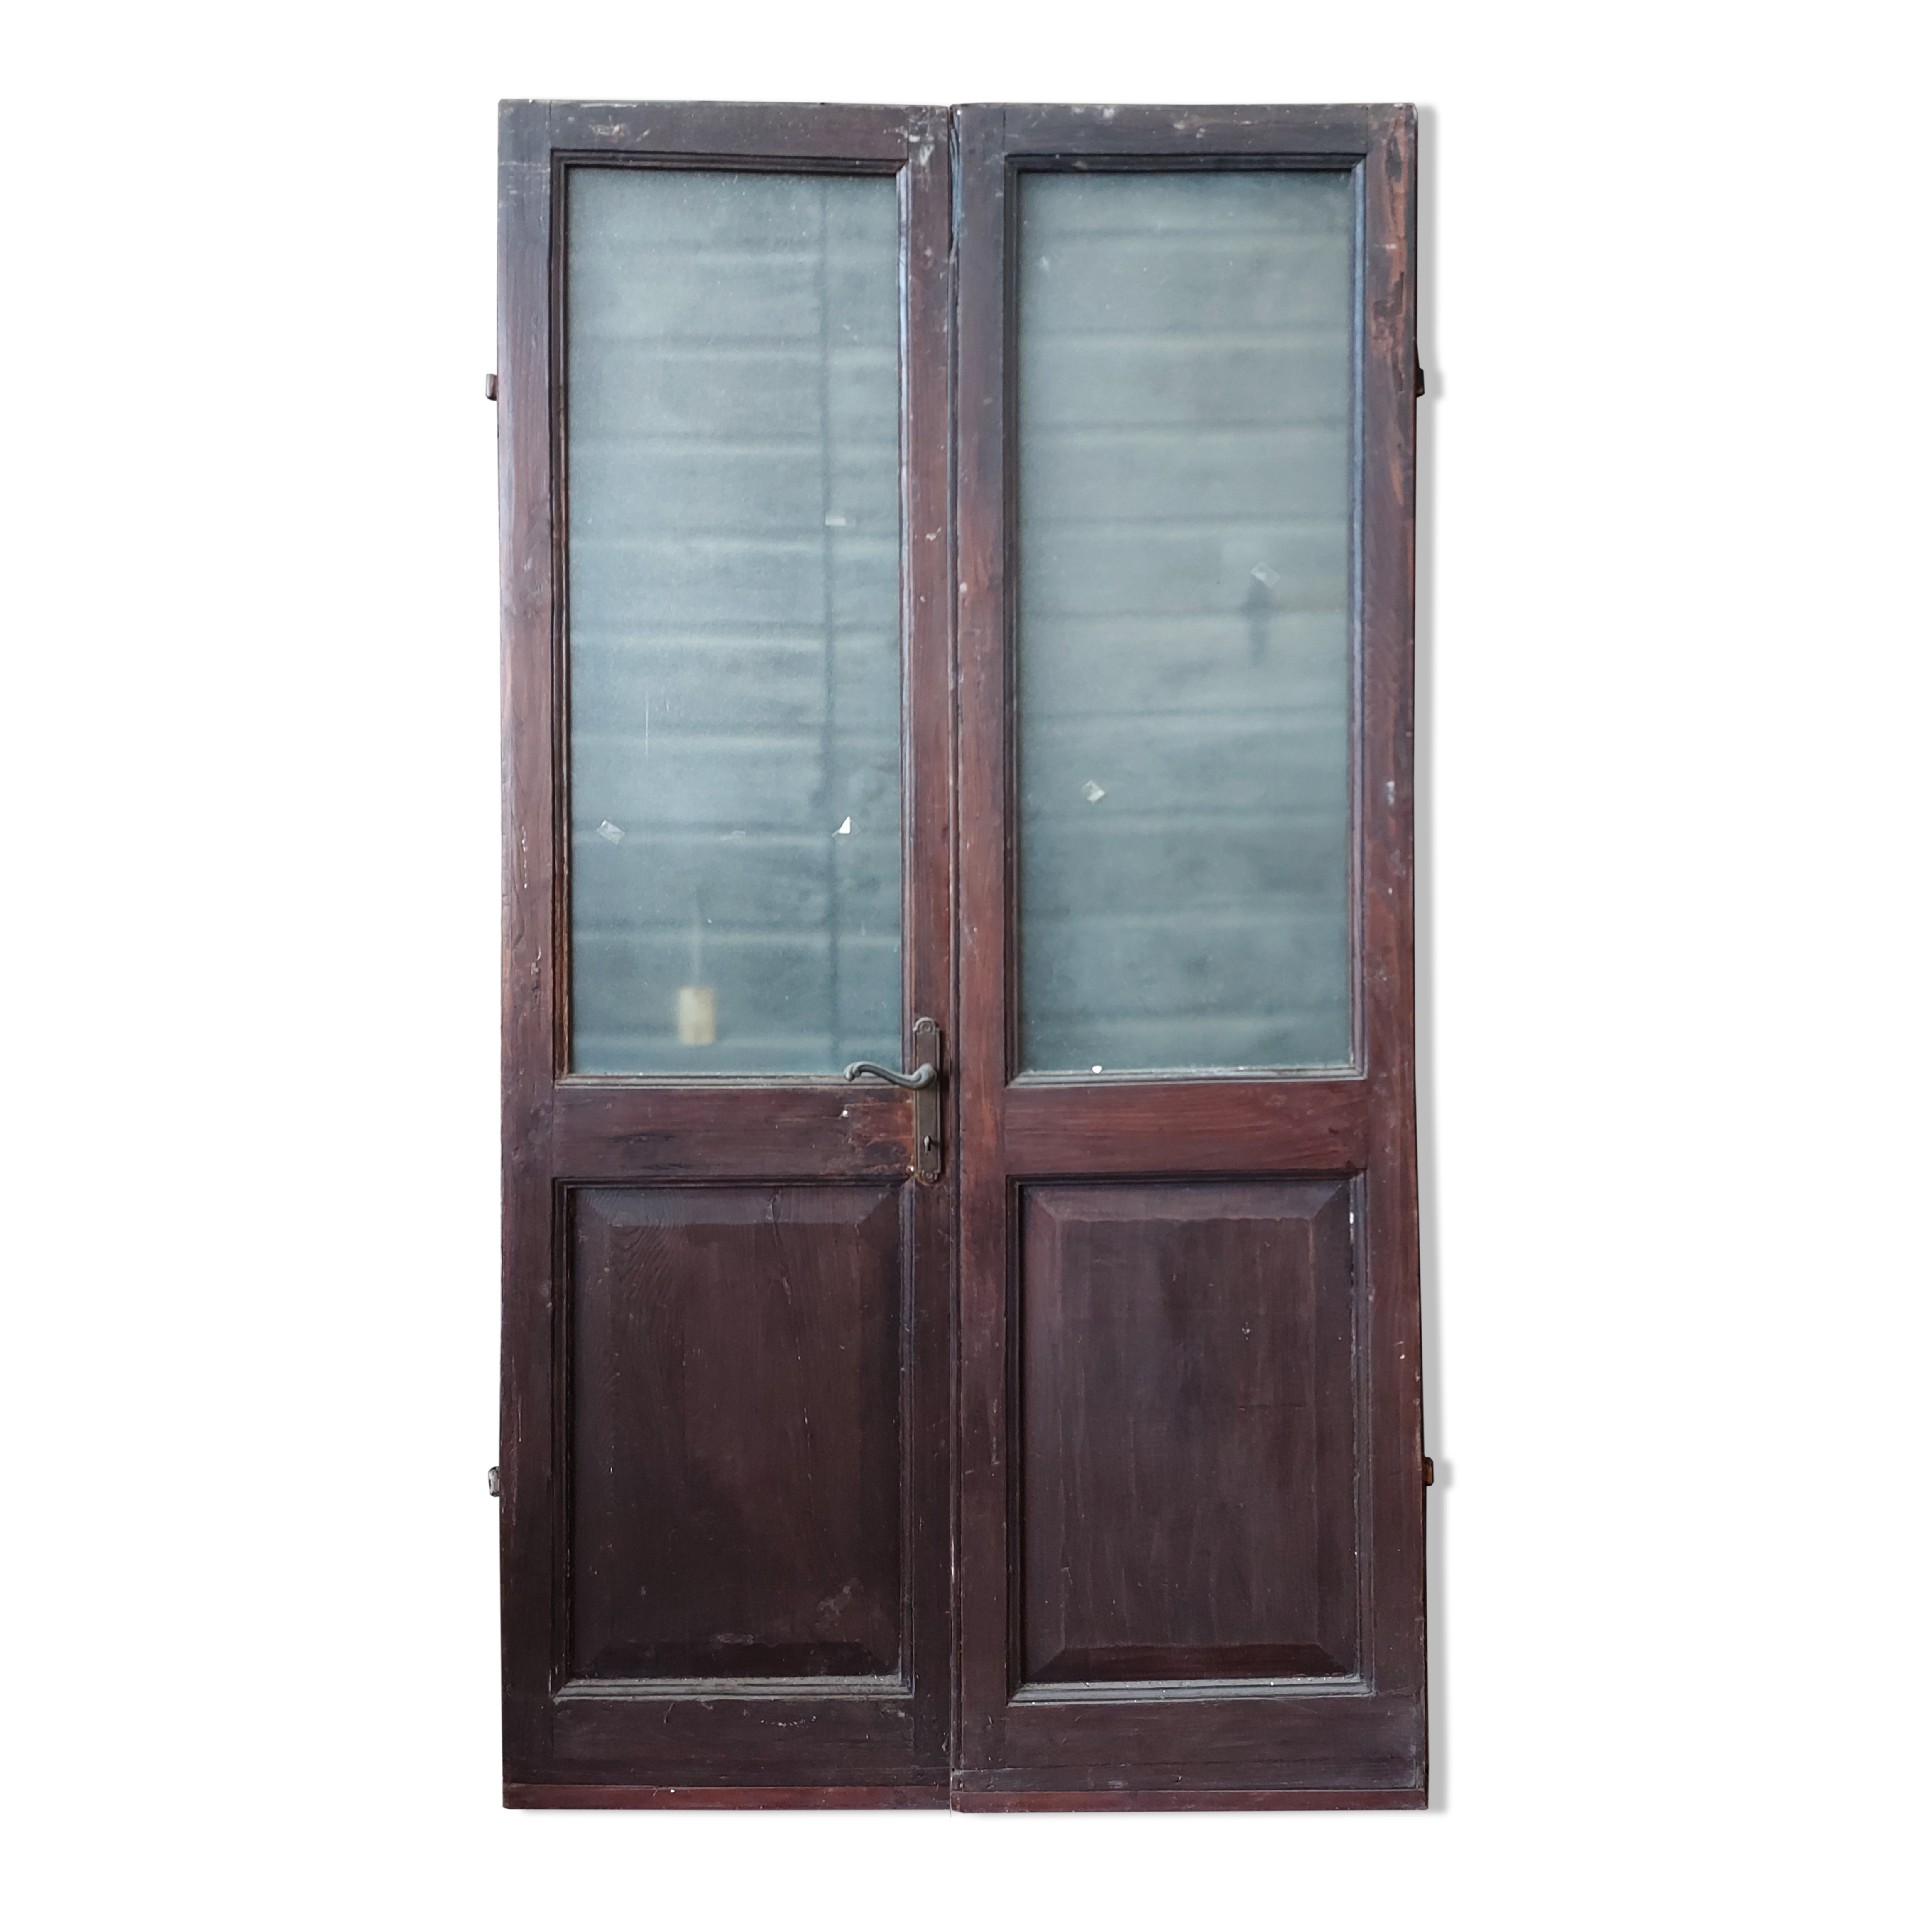 Porta in legno con vetro.  - Porte in Legno - Porte Antiche - Prodotti - Antichità Fiorillo